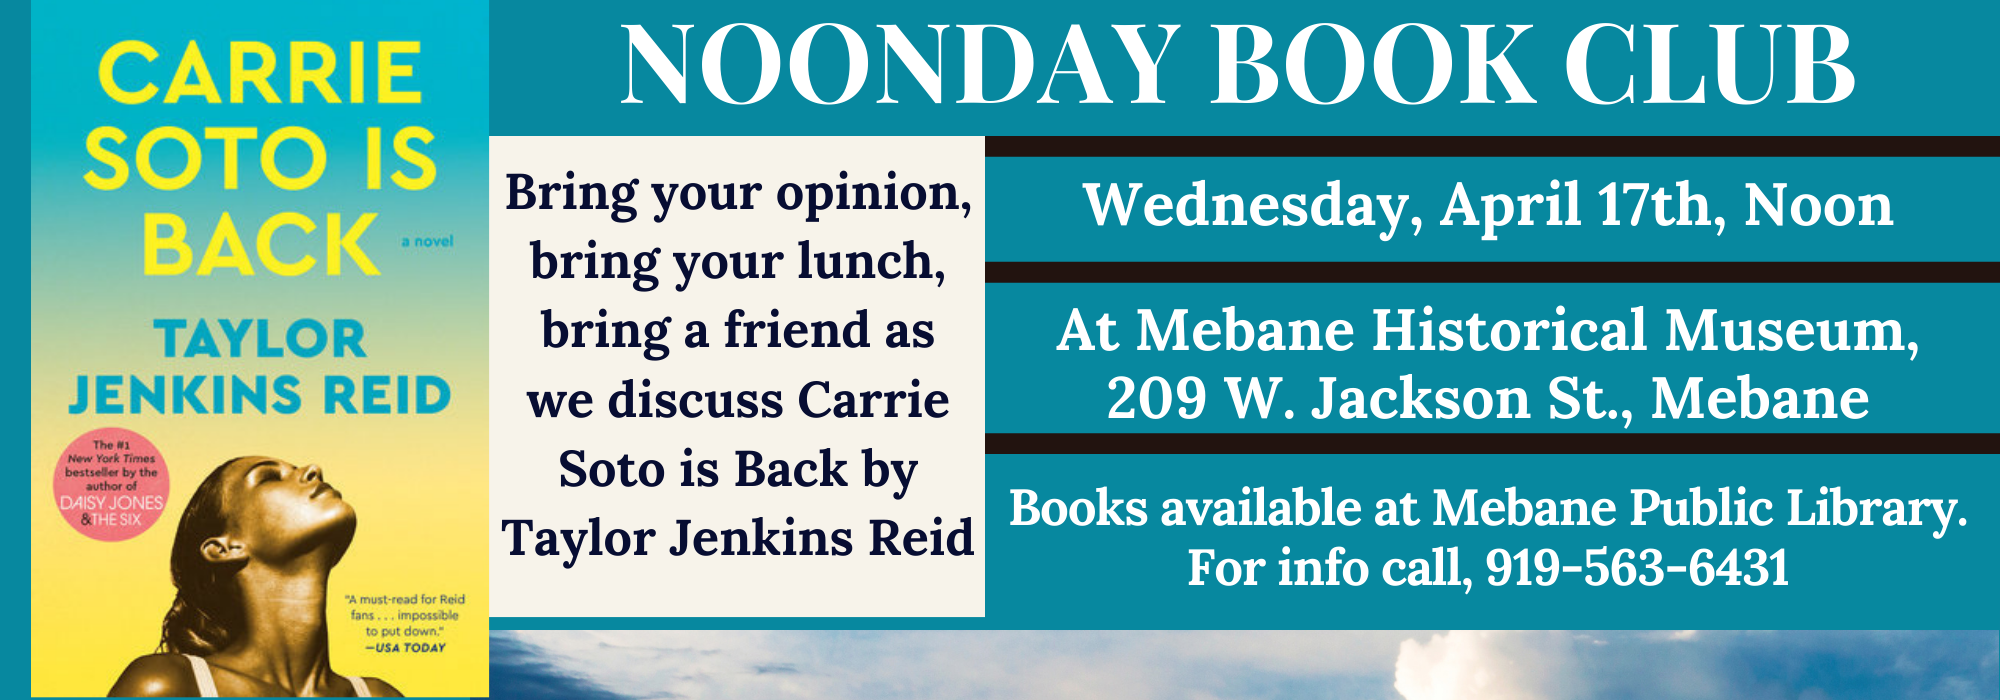 4.17 at Noon - Noonday Book Club at Mebane